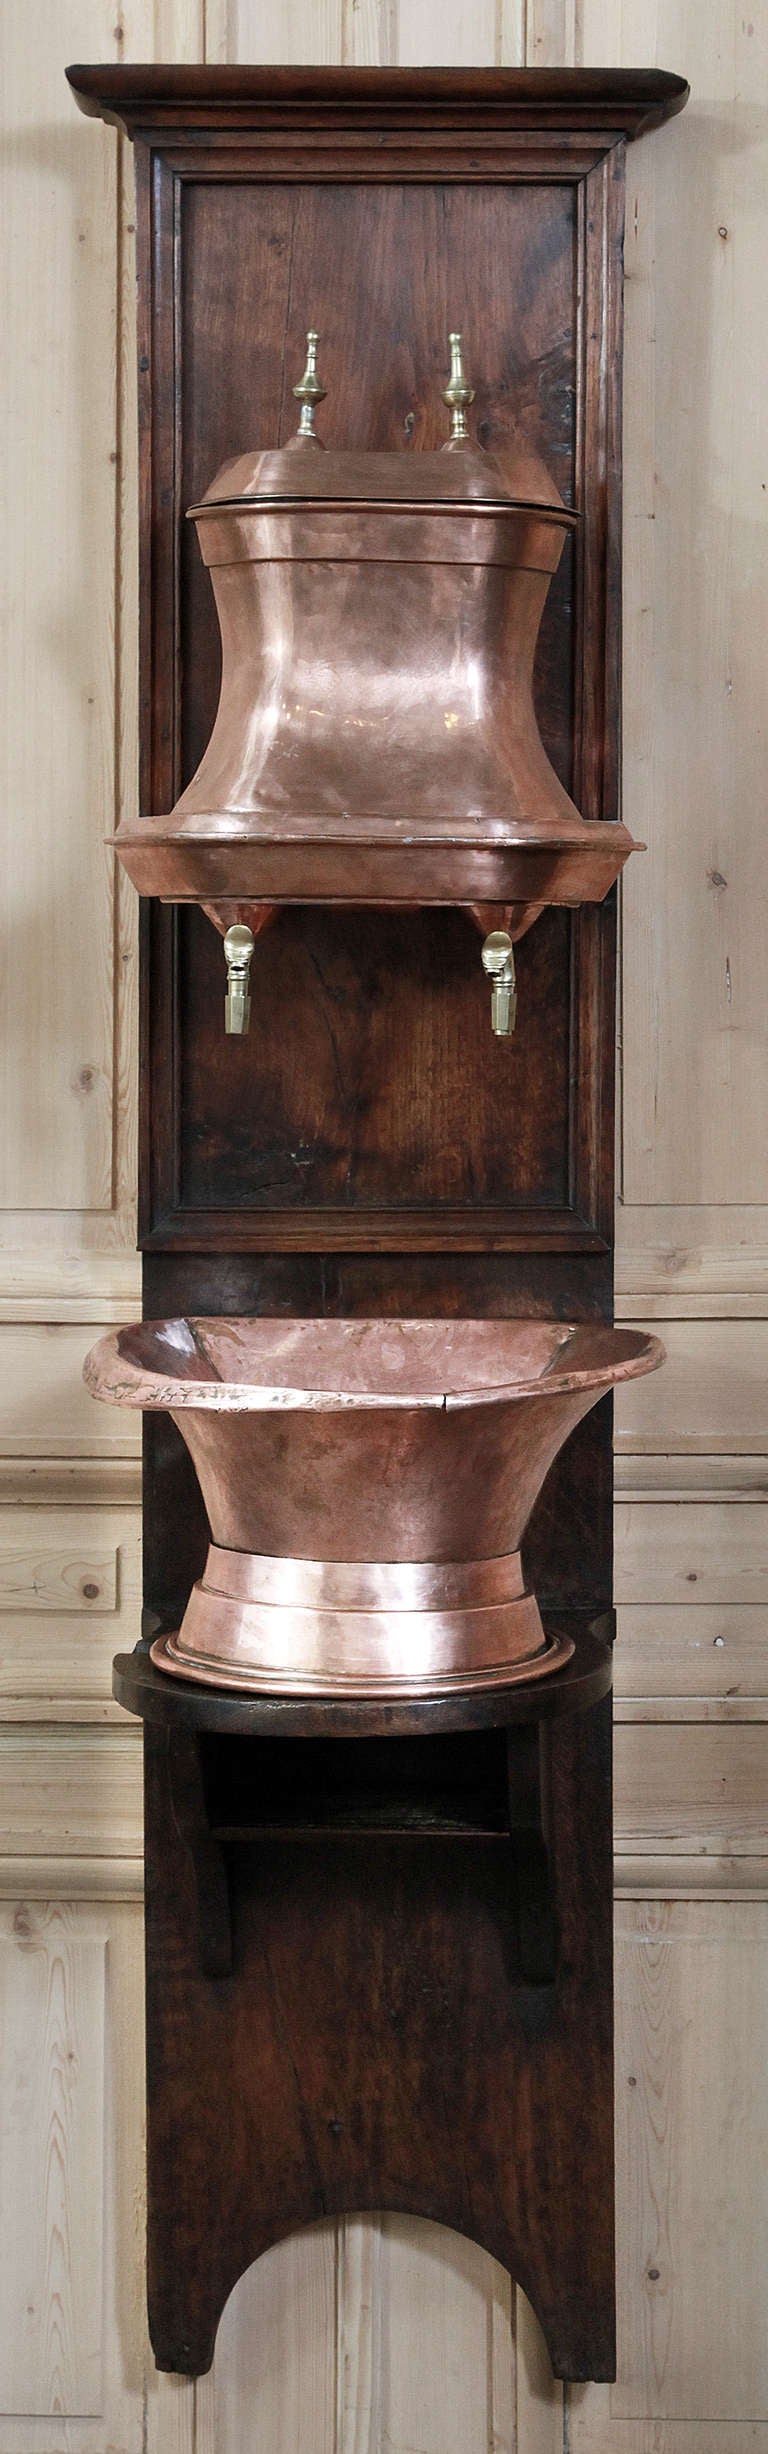 Rococo Antique French Copper Wall Fountain